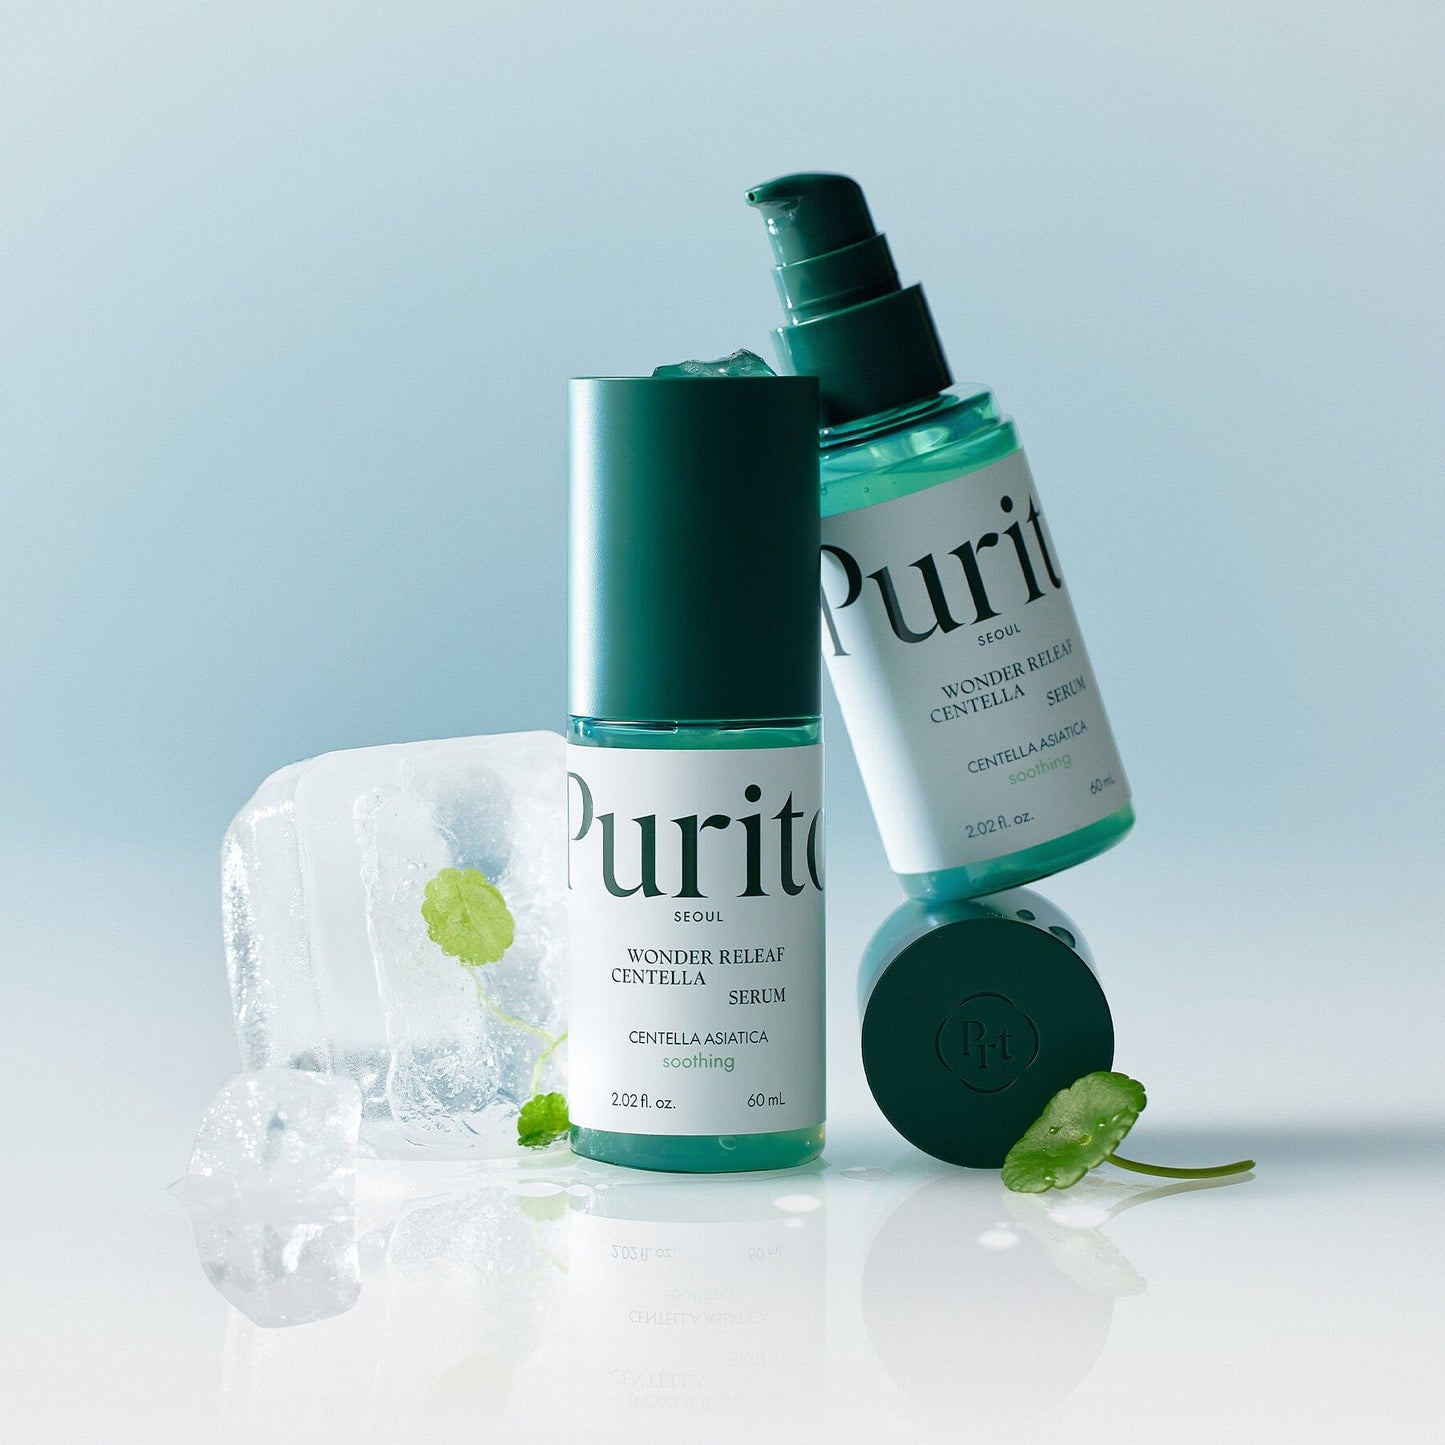 Purito Centella Green Level Buffet Serum Skin Purito 